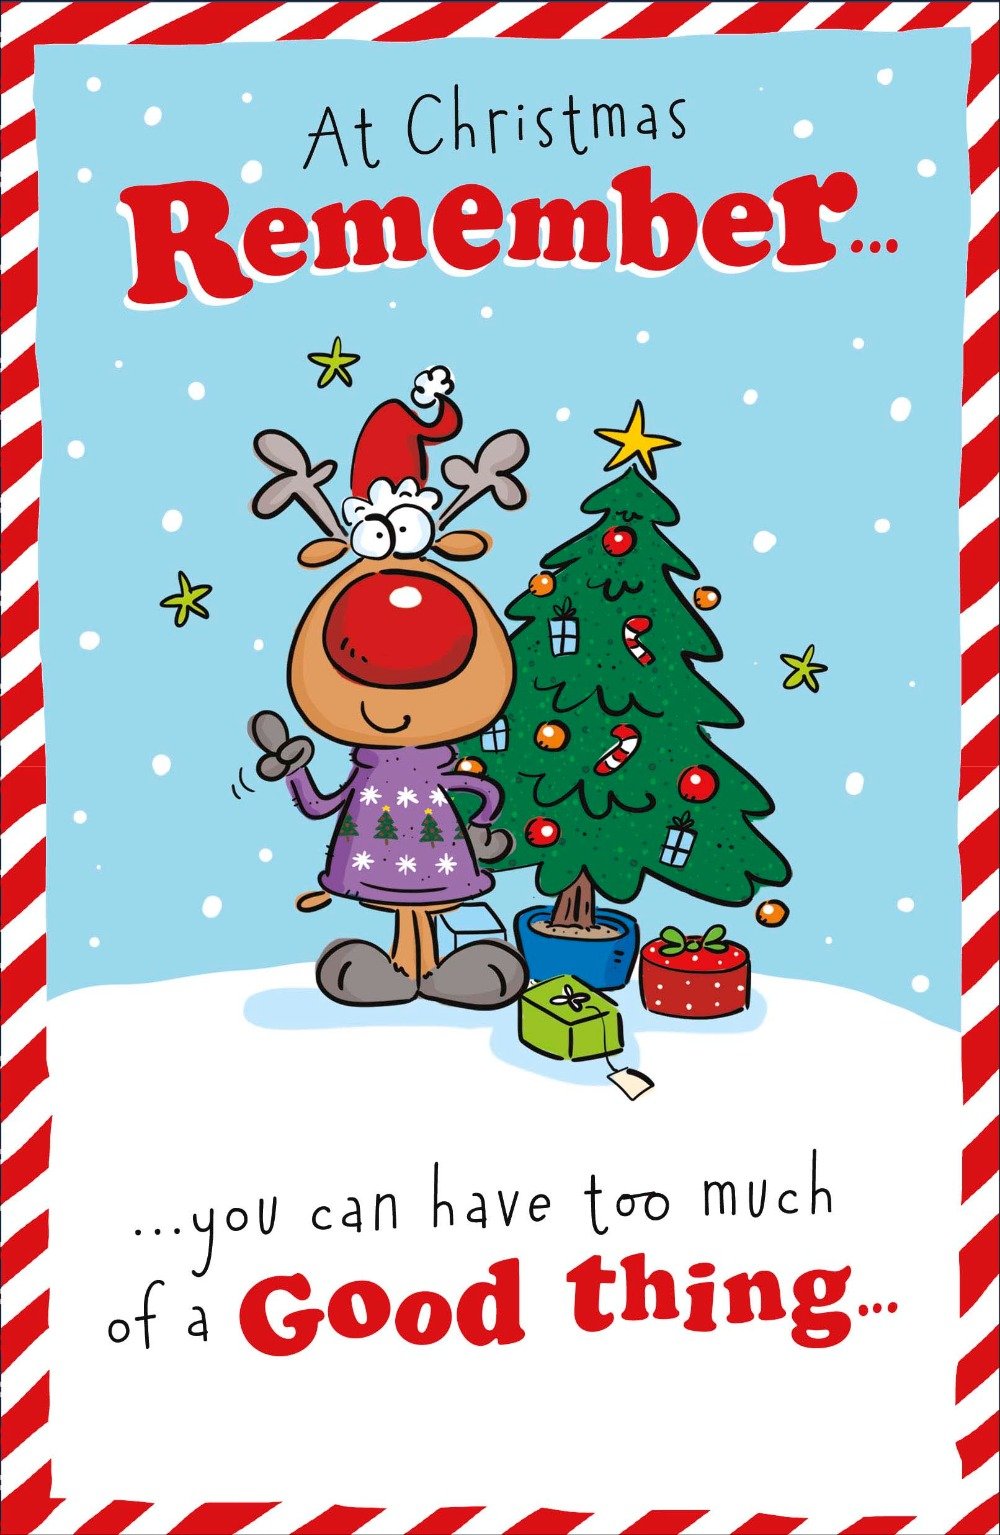 Humour Christmas Card 